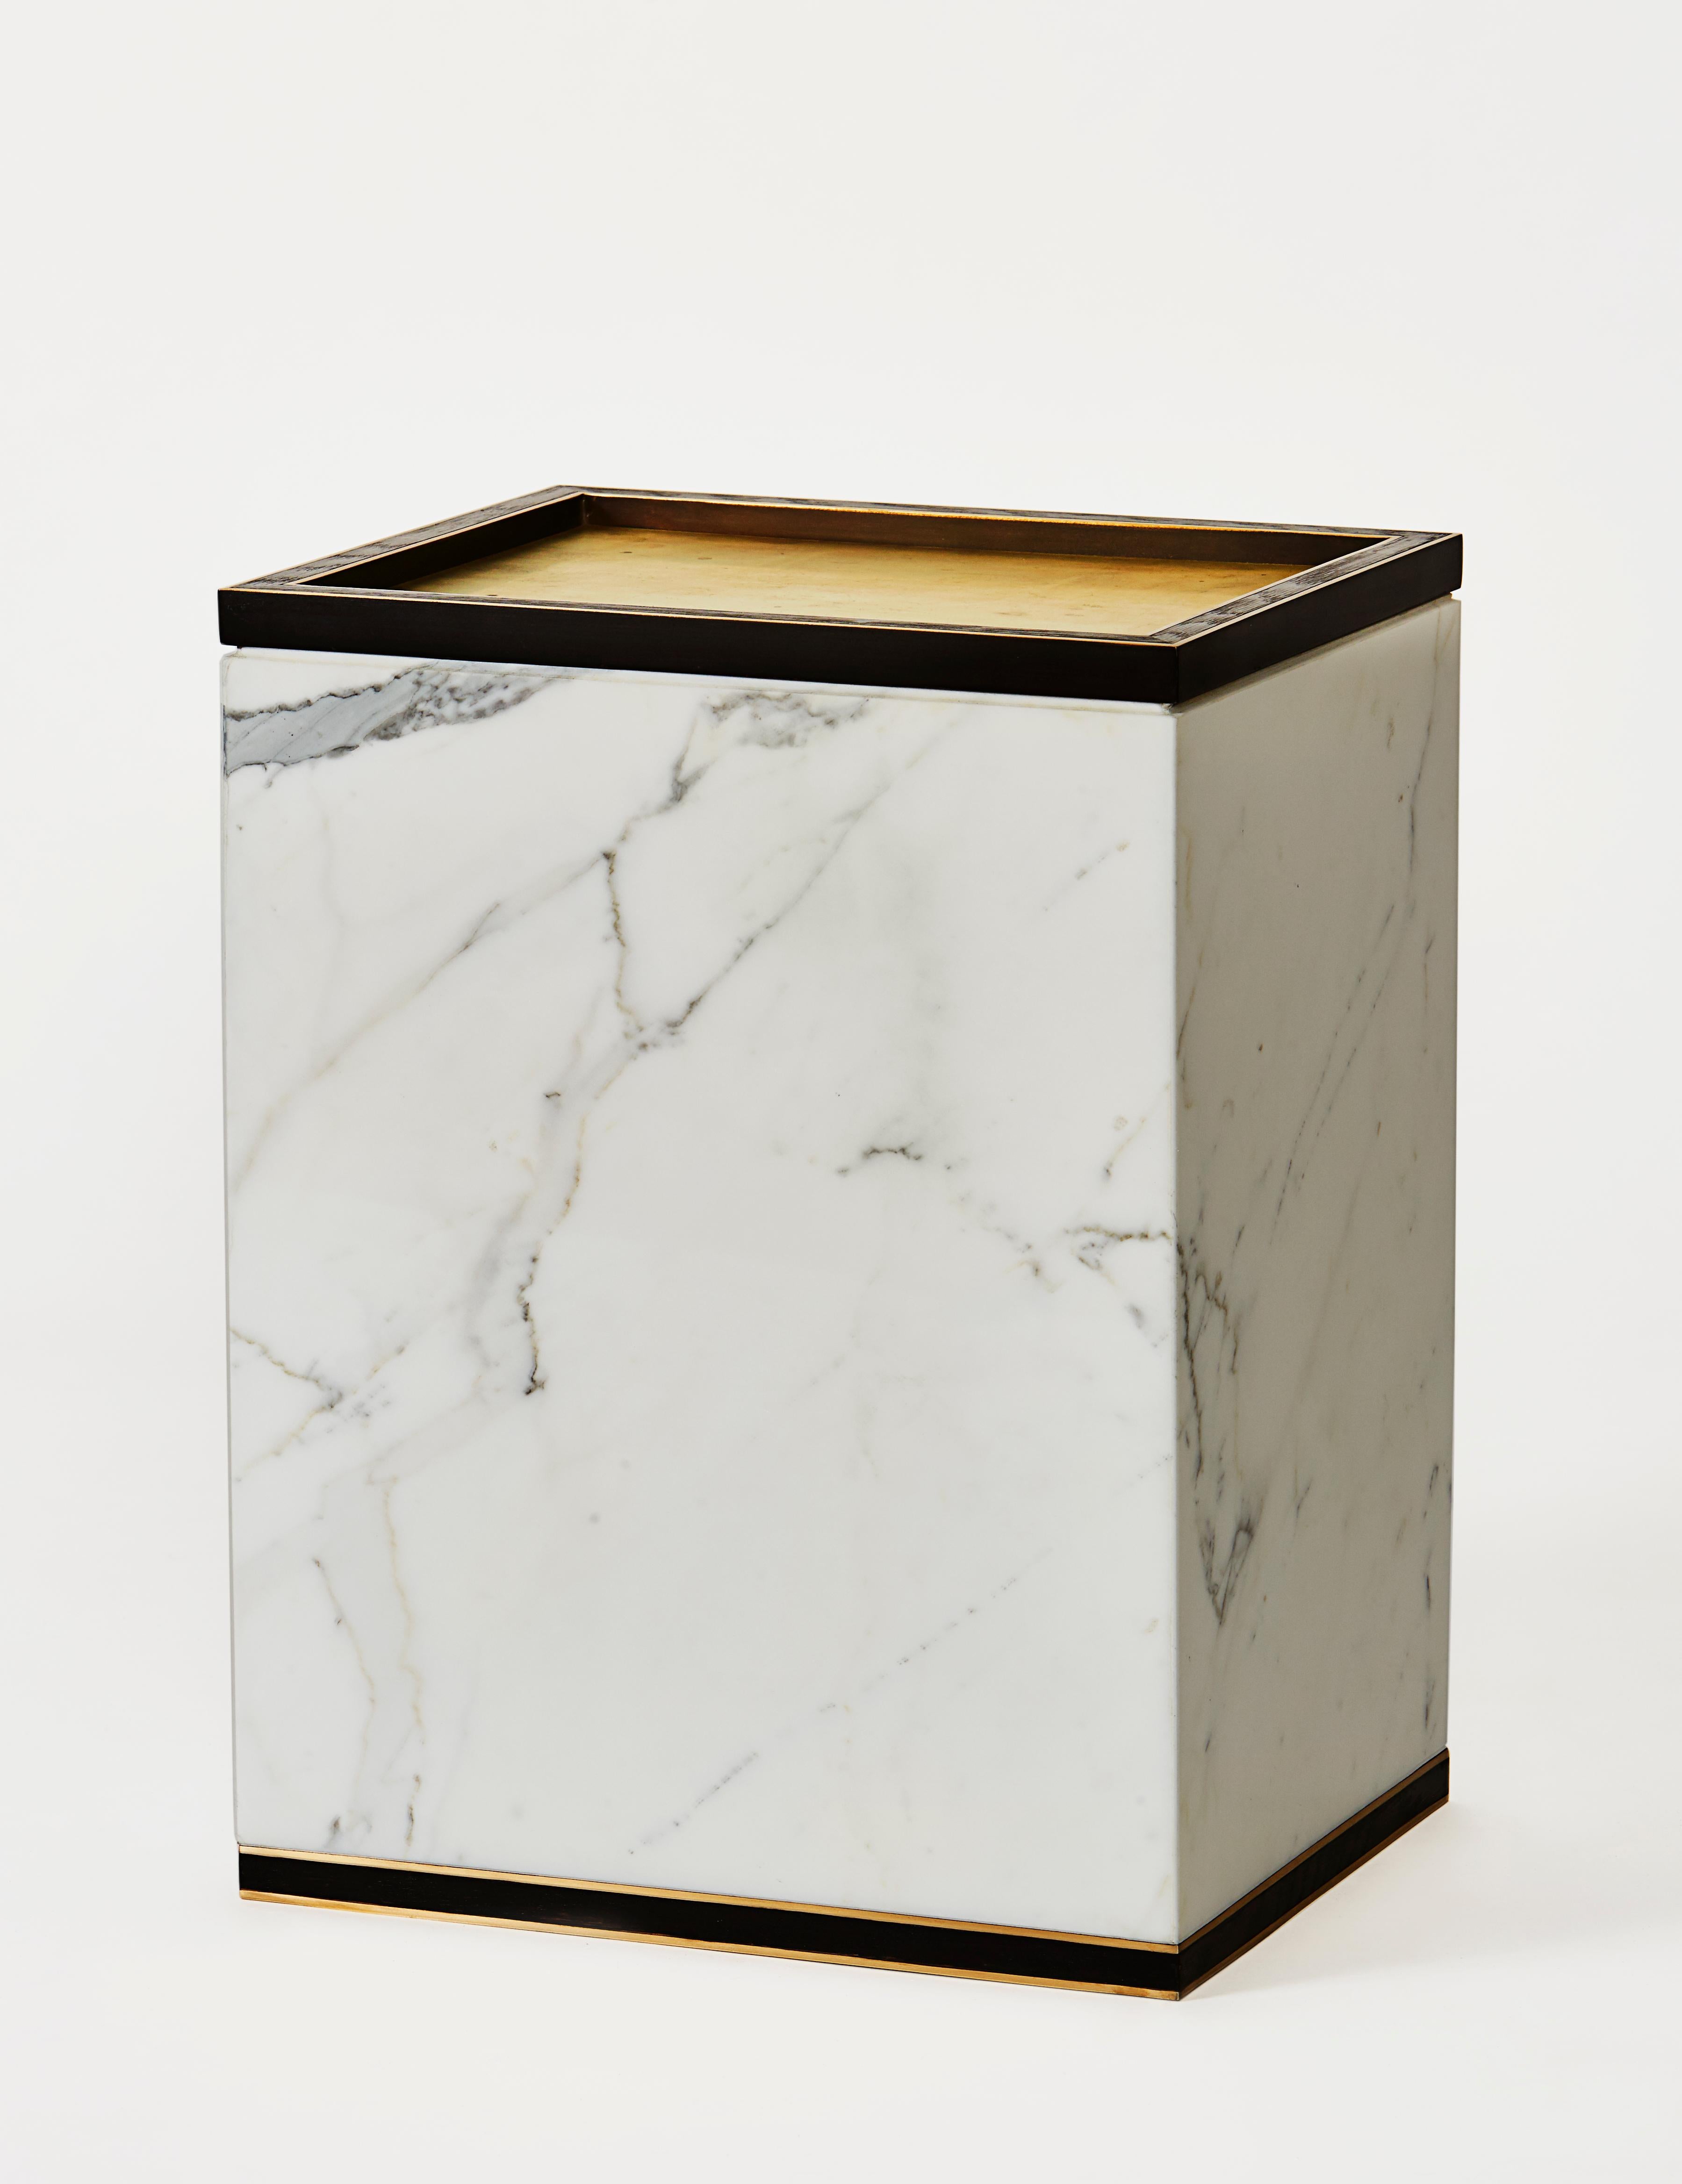 Table Médicis en laiton, chêne et marbre par Cam Crockford 

Matériaux : Laiton, chêne et marbre
Dimensions : 10.5 W x 13.5 D x 17.5 H pouces.